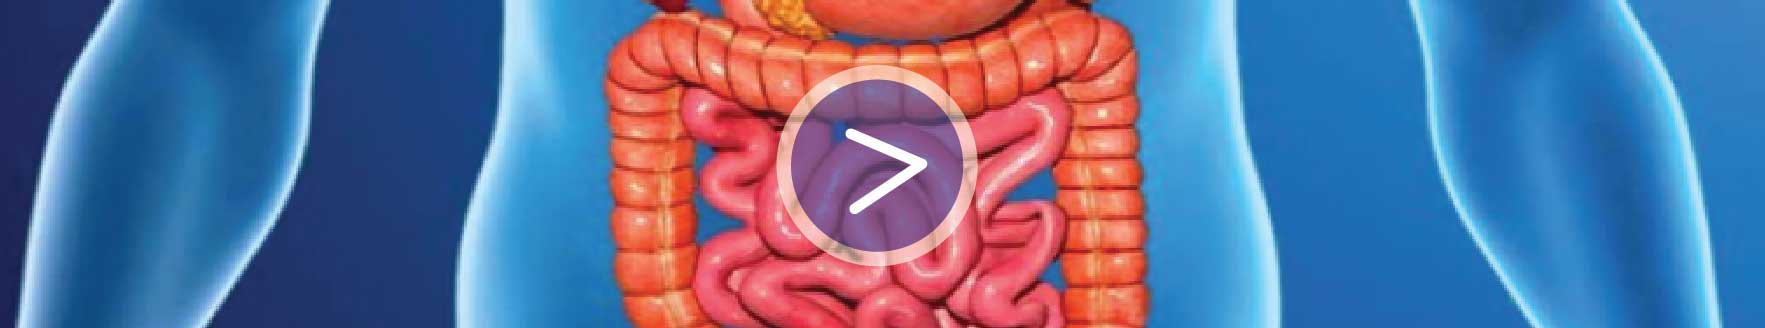 Representación del sistema digestivo en el cuepor humano. Colon e intestino delgado. Símbolo "play" en medio.